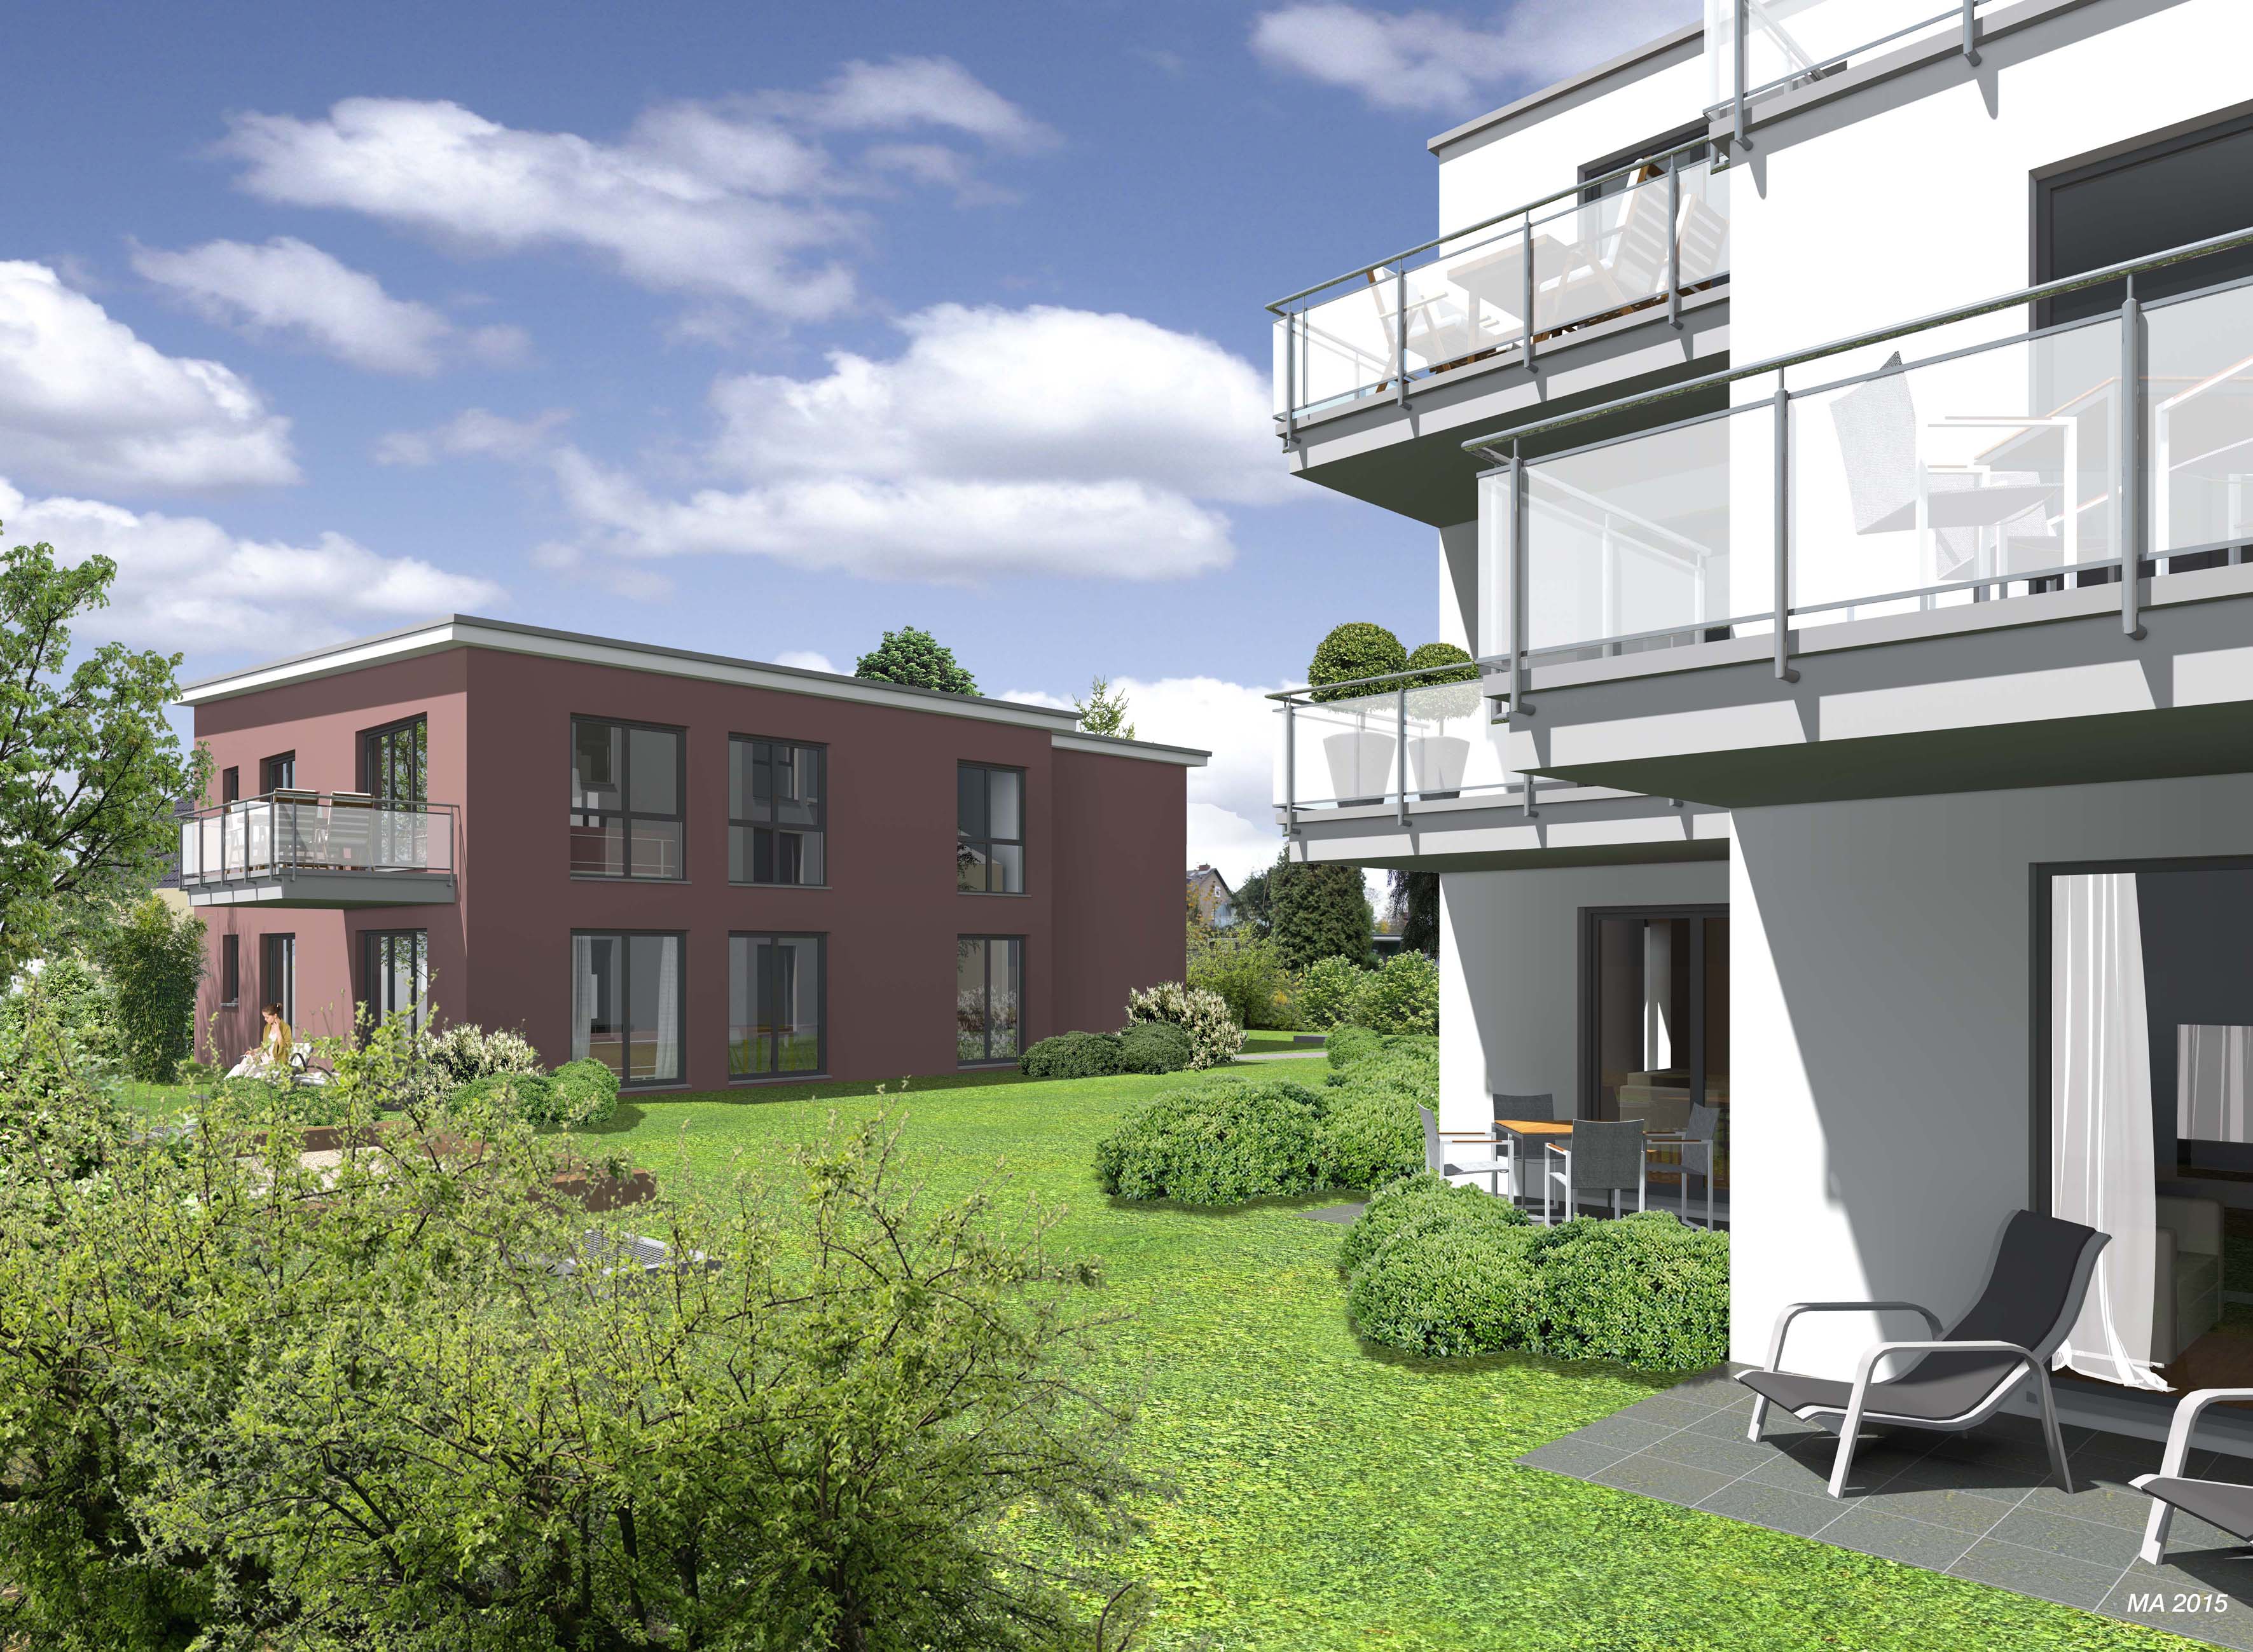 Architekturillustrationen des neuen Mehrfamilienhauses in Refrath